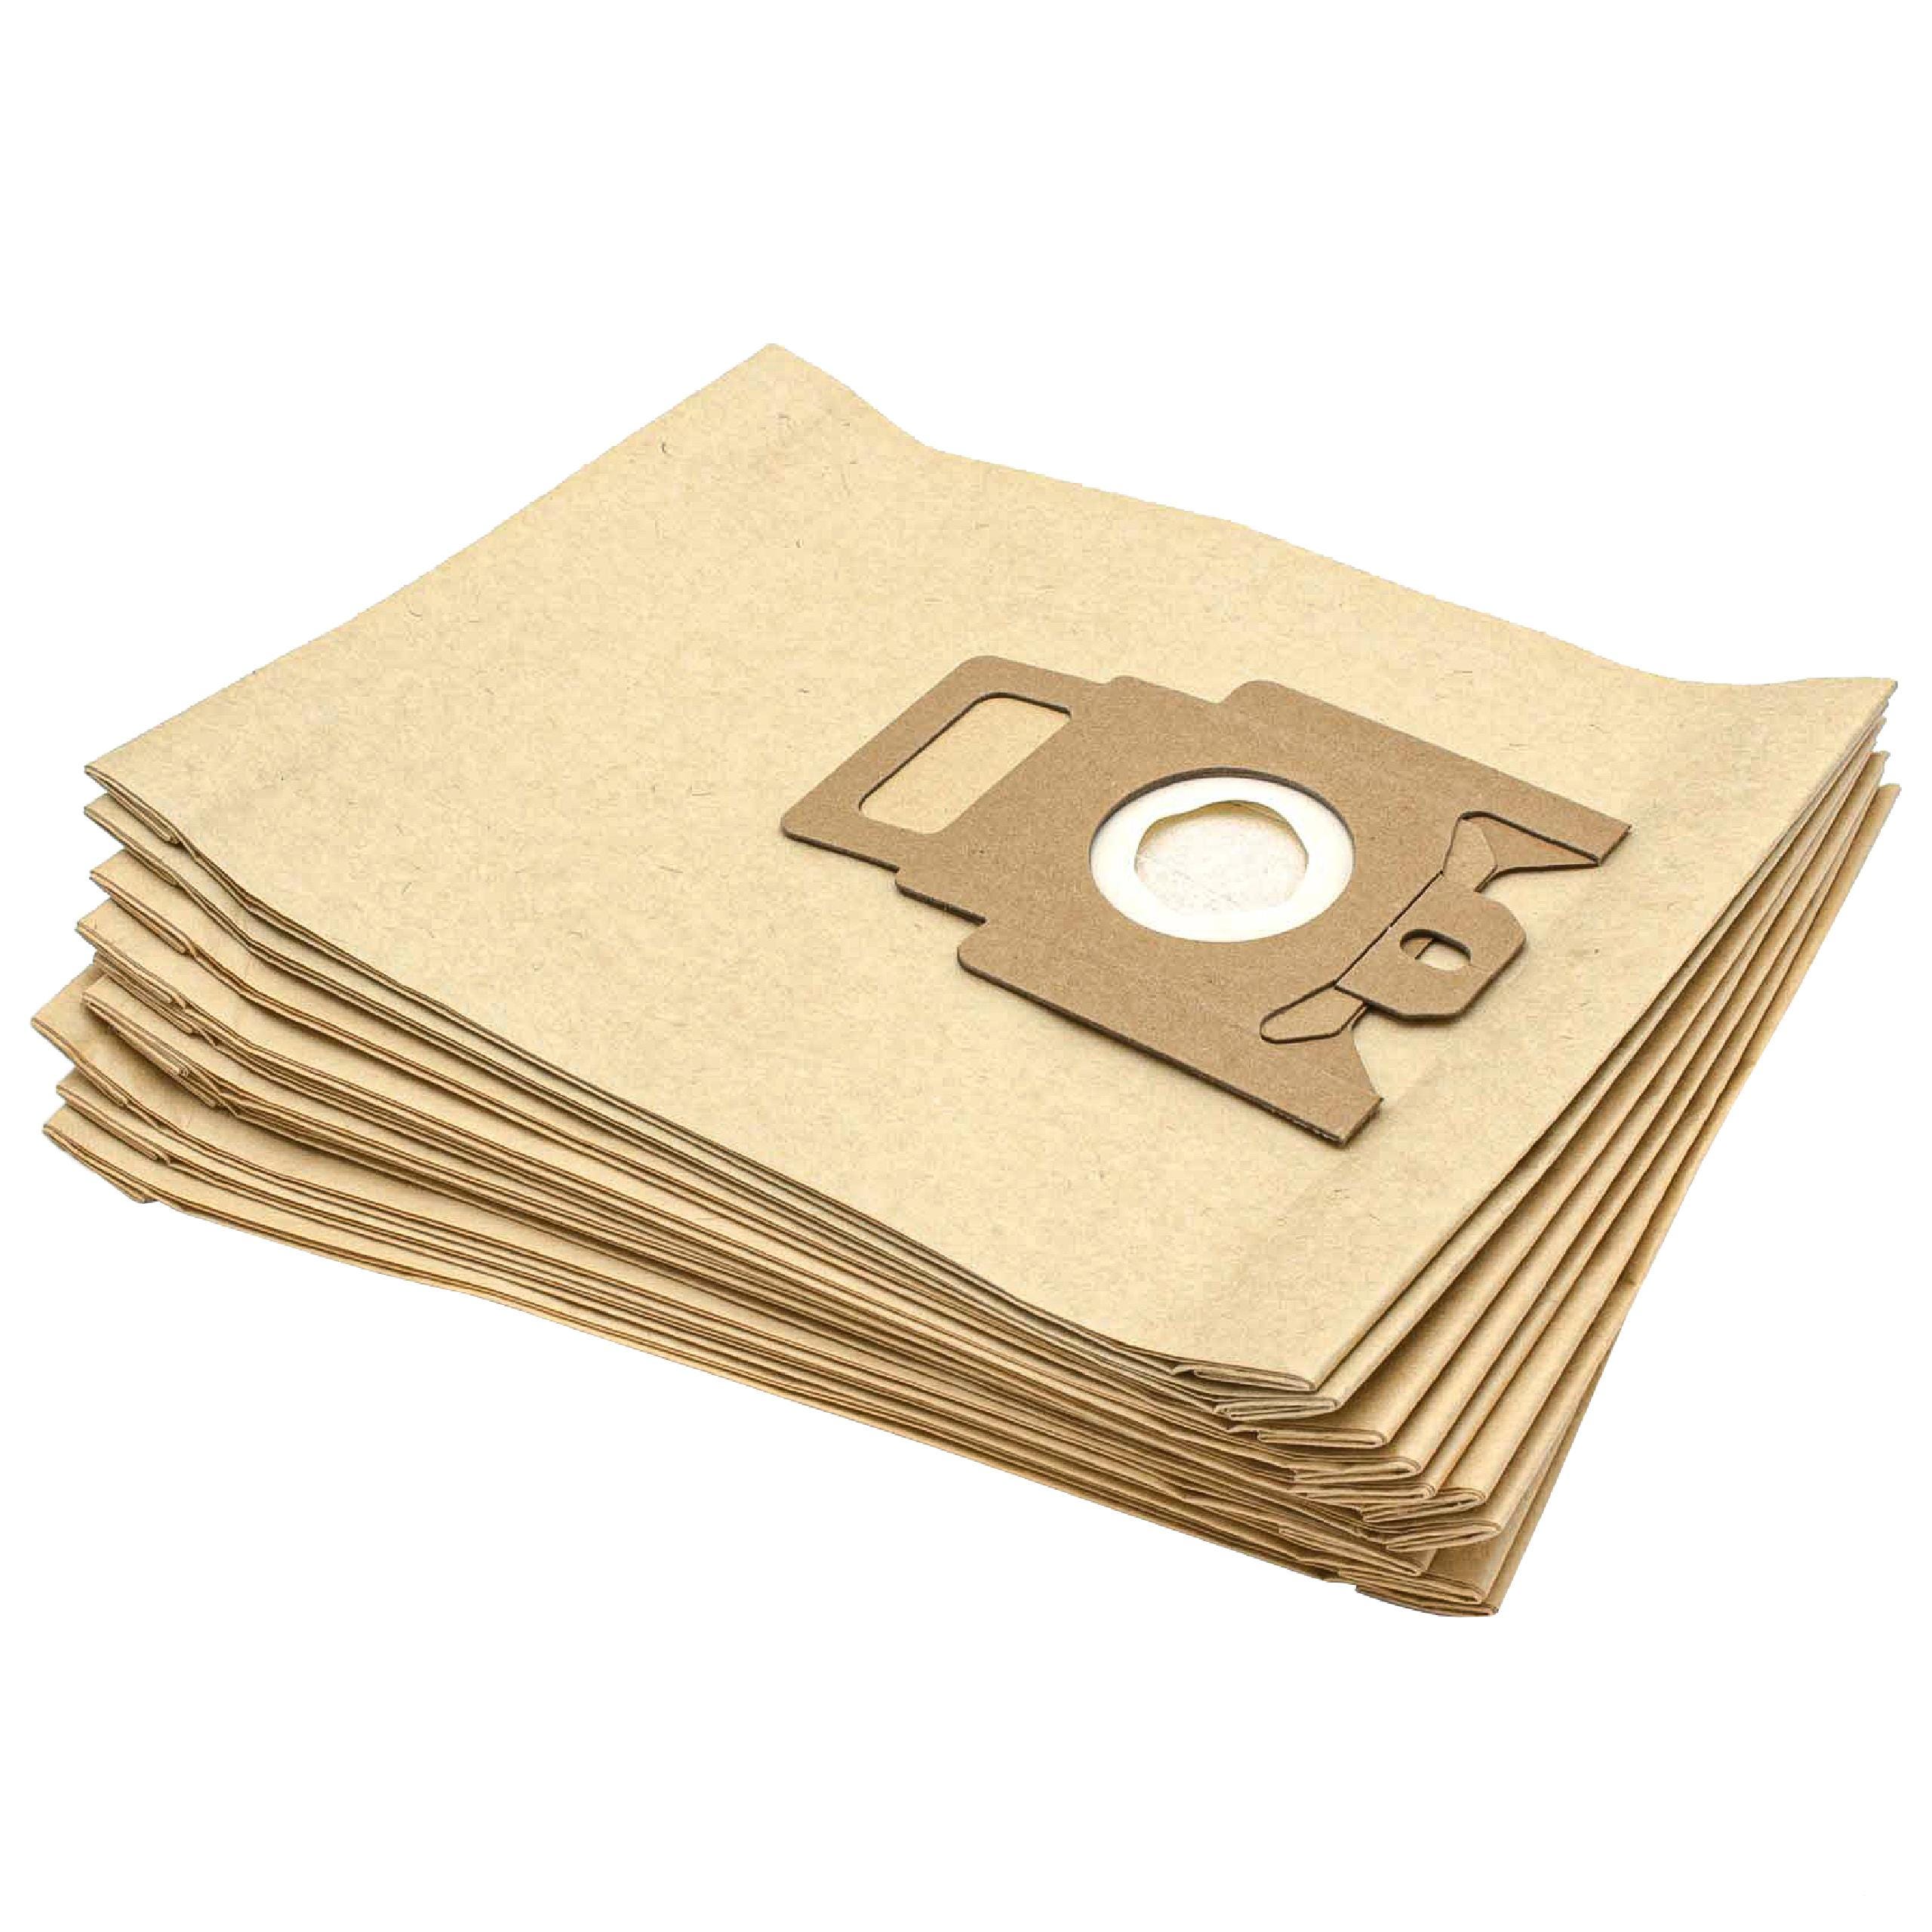 Vhbw 10x sacchetto dell'aspirapolvere compatibile con Miele Electronic 850,  1200, 1400 aspirapolvere - in carta, Typ M, 28cm x 19,5cm, color sabbia